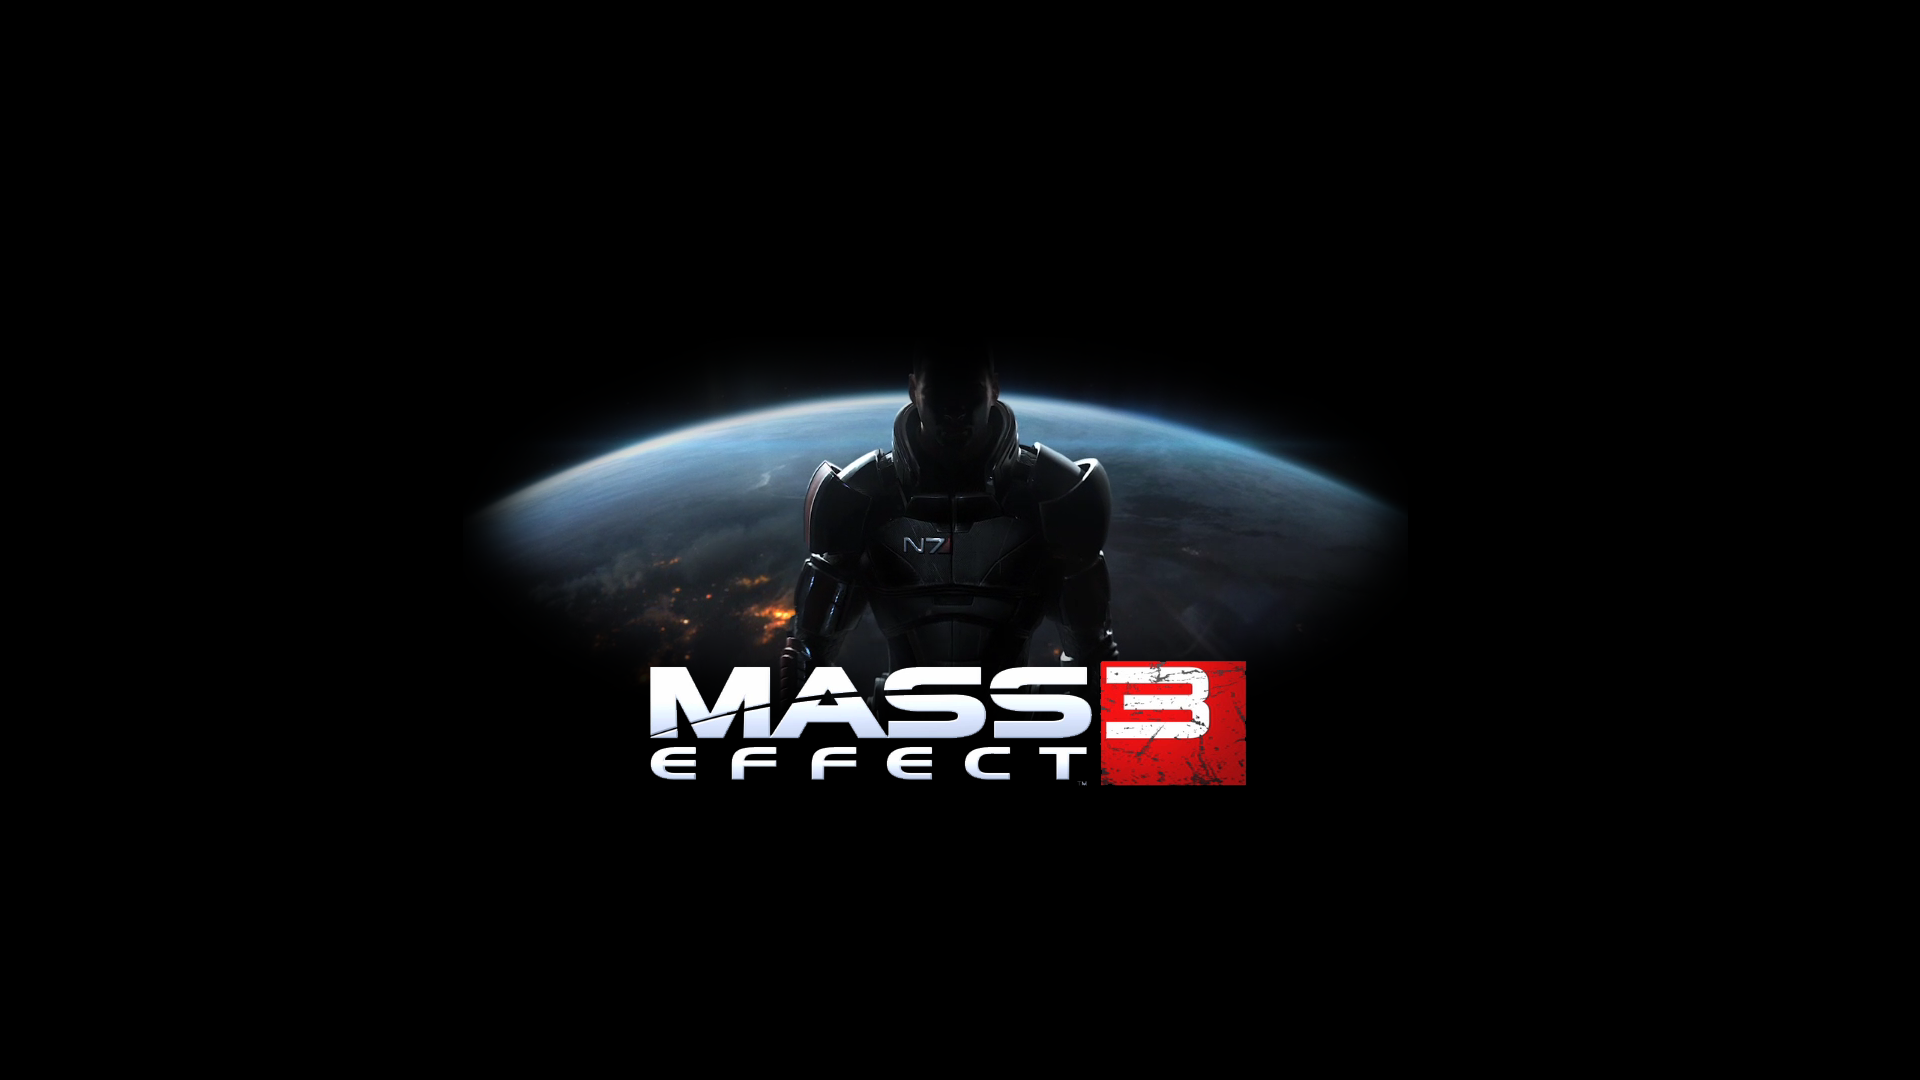 Le multi de Mass Effect 3 nous fait de l'effet ! Mass_effect_3_1920x1080_by_lukemat-d36uki6